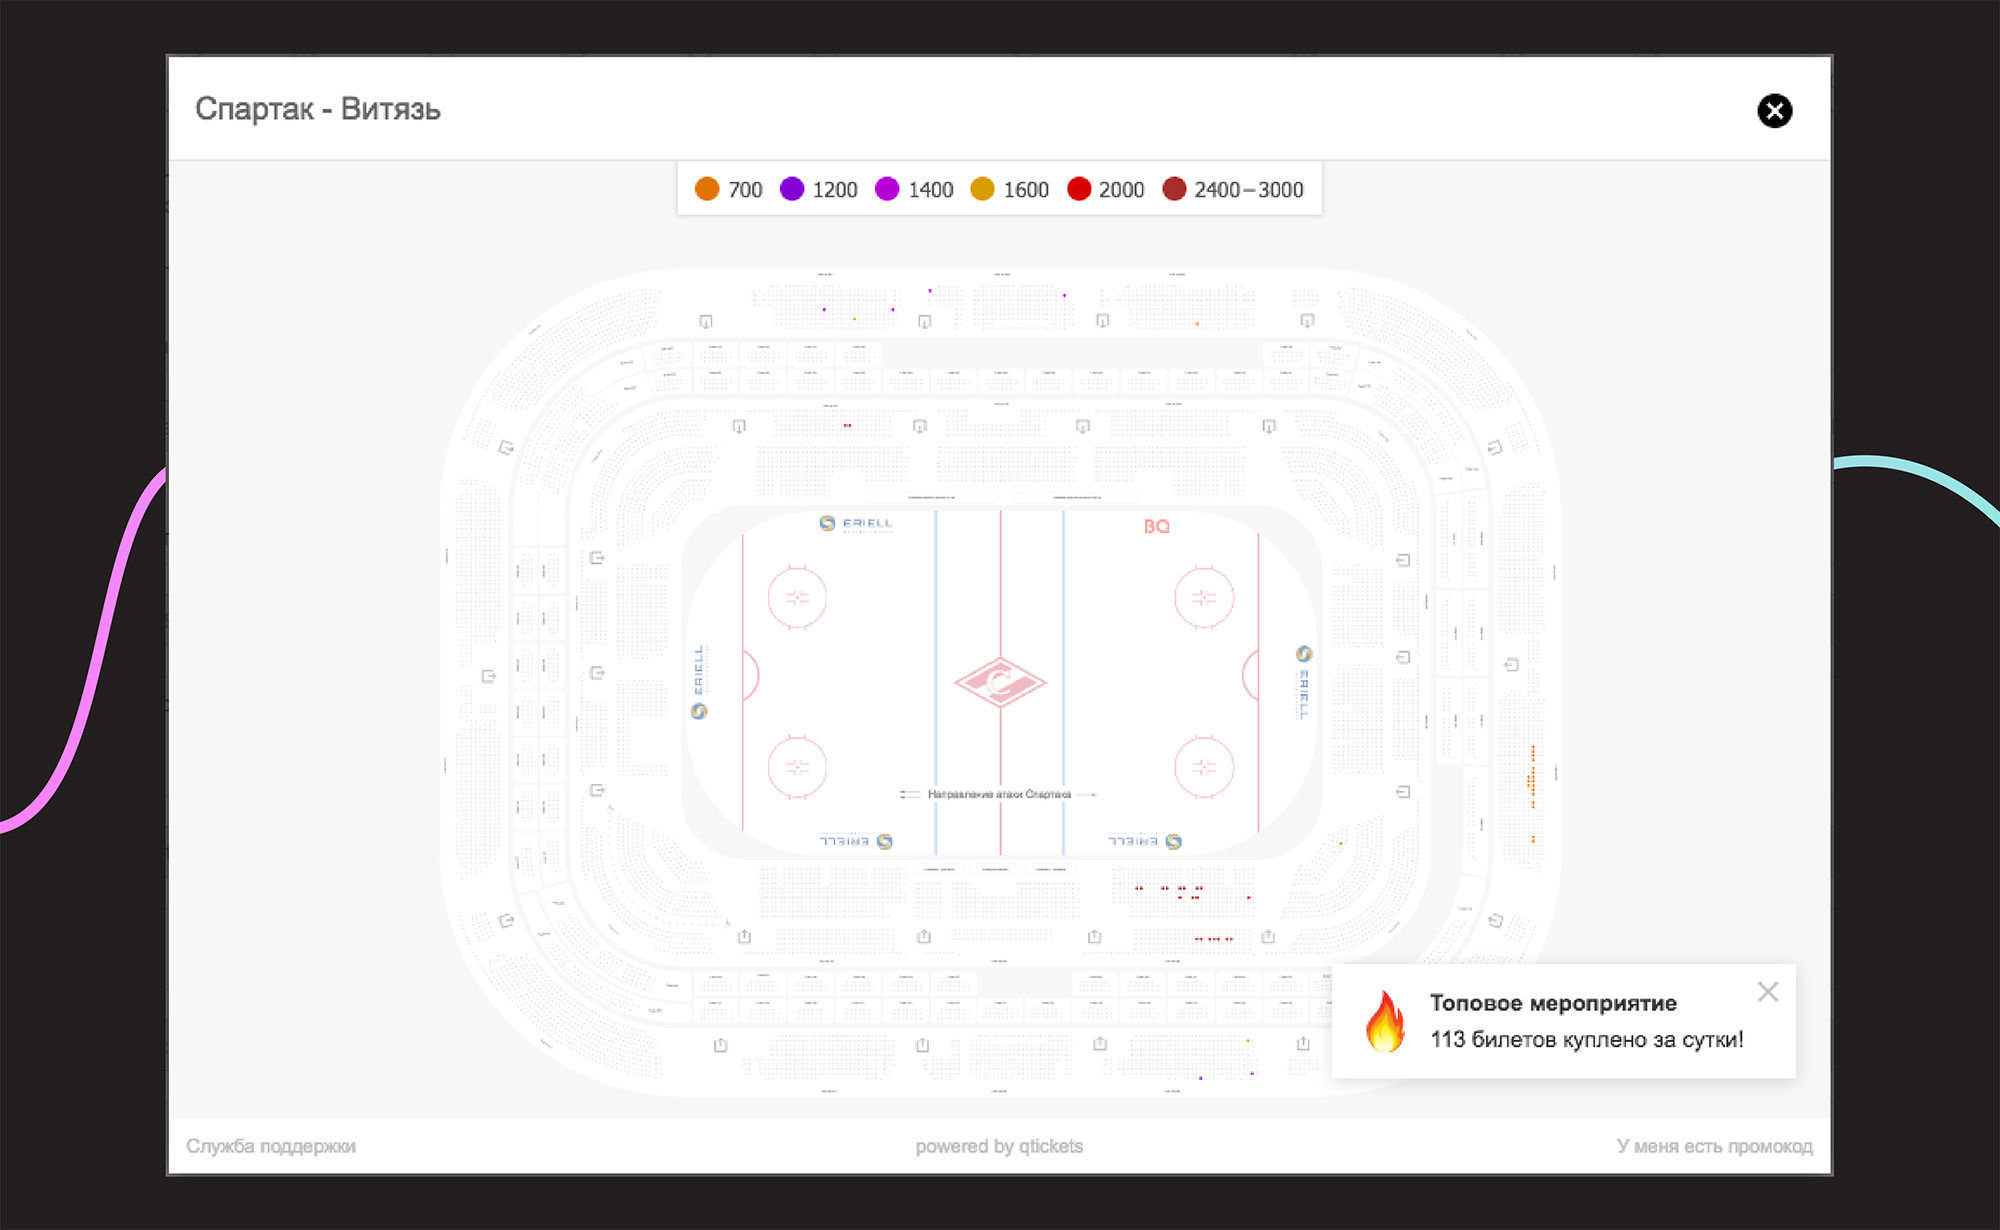 продажа билетов на хоккей